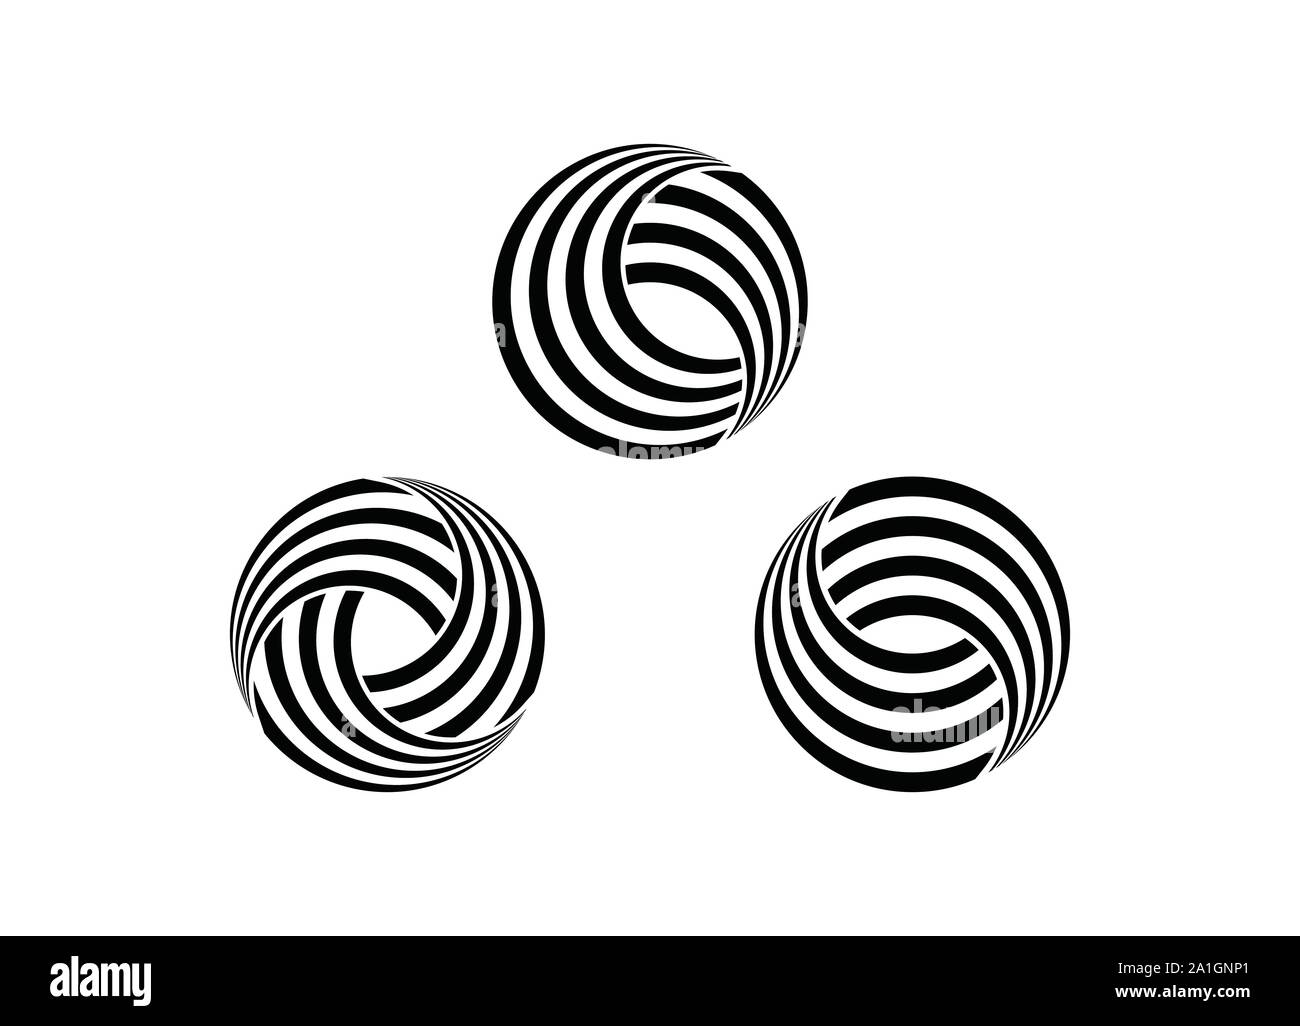 Vettore cerchio astratto swirl logo design elementi. Carta Origami style, piatta e line art, vettore di elementi di design per il logo della tua azienda, Illustrazione Vettoriale